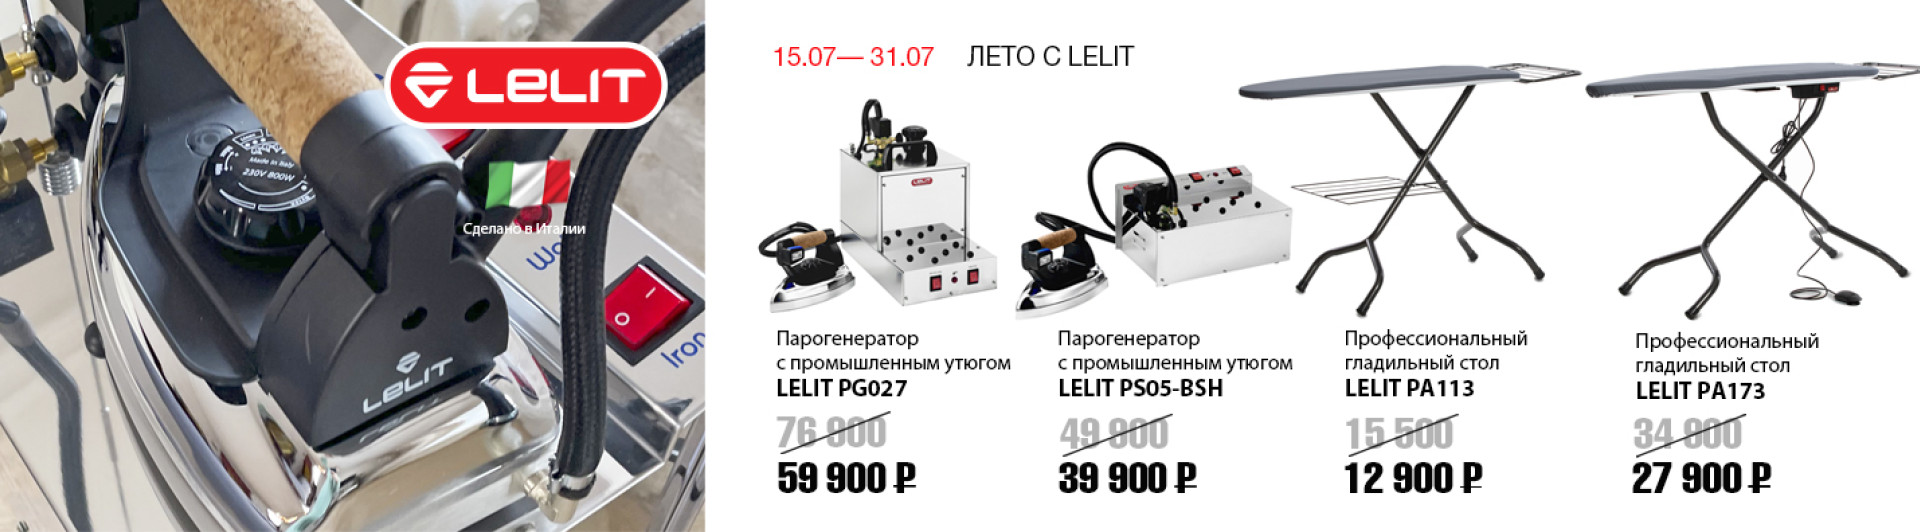 С 15 по 31 июля скидки на парогладильное оборудование LELIT